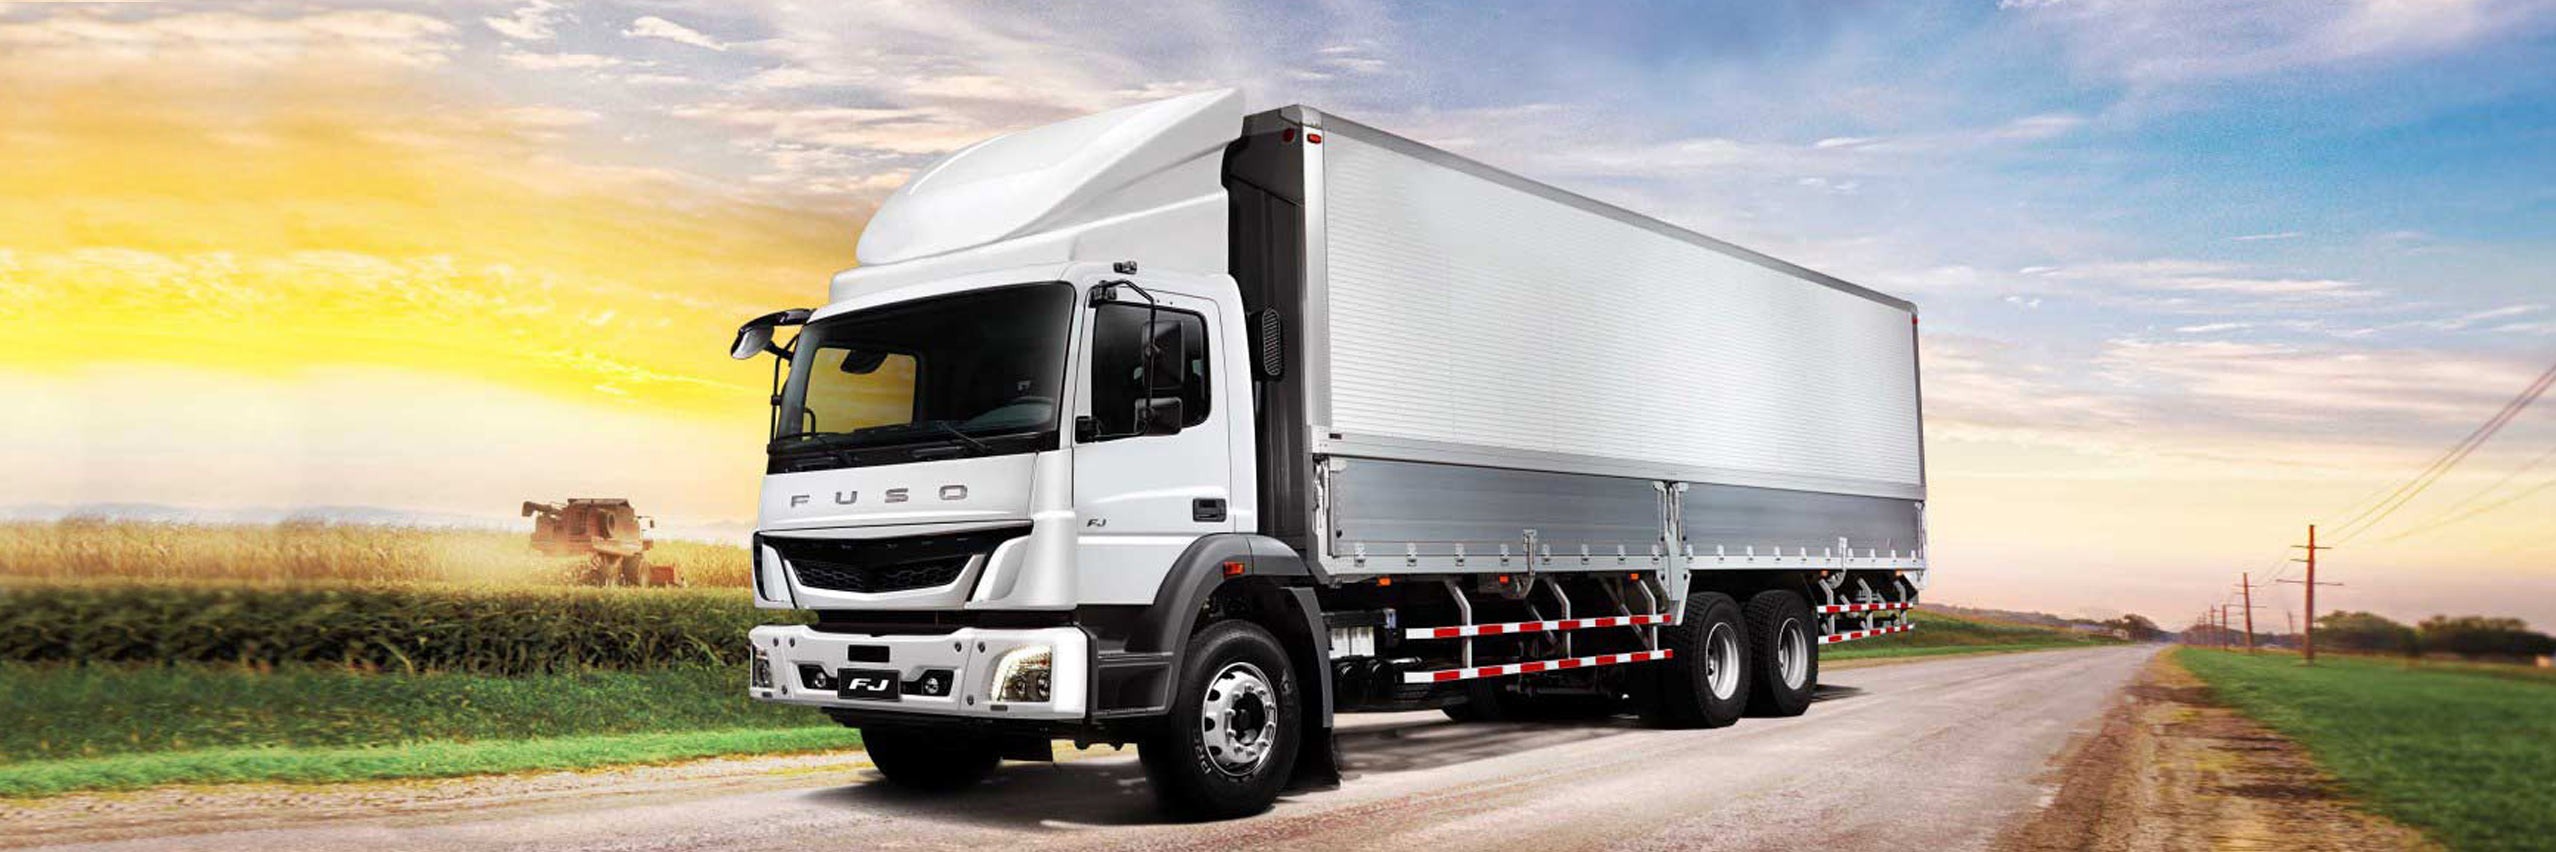 Los camiones pesados de FUSO son ideales para operaciones de carga pesadas y de larga distancia